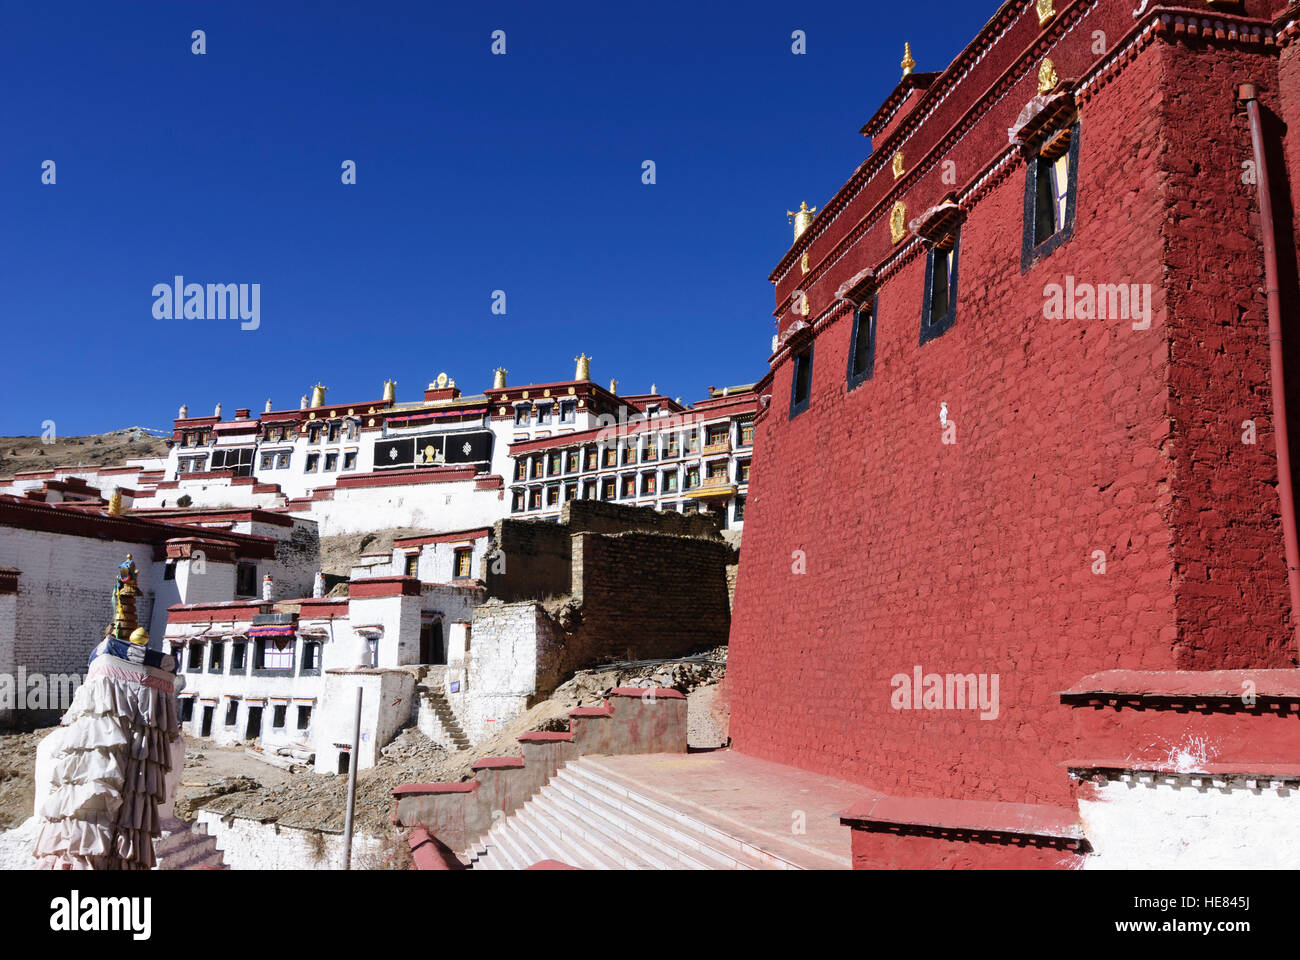 Monastère de Ganden : Ganden : Siège de l'école Gelugpa (jaune-cap), qui comprend également le Dalaï Lama et le panchen-Lama, Tibet, Chine Banque D'Images